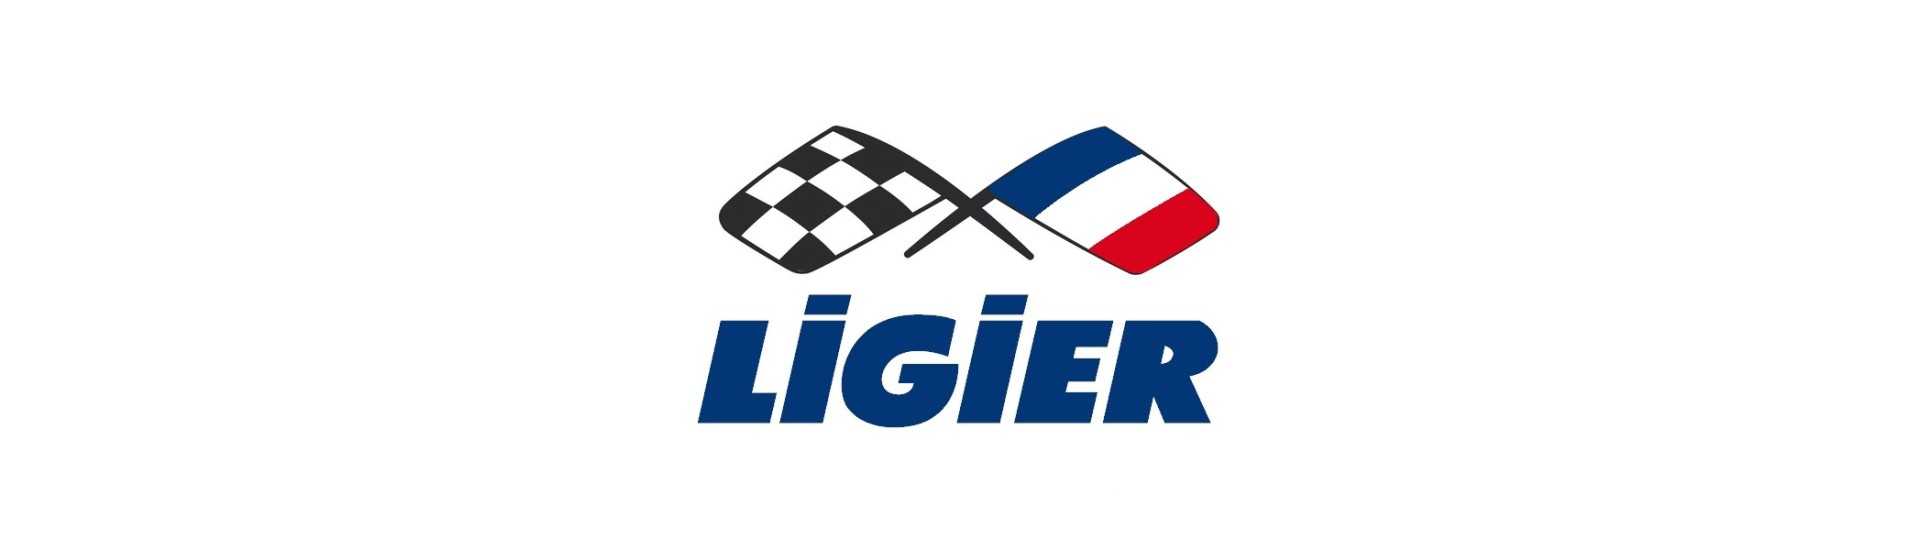 Alternativt bälte till bästa pris för bil utan licens Ligier